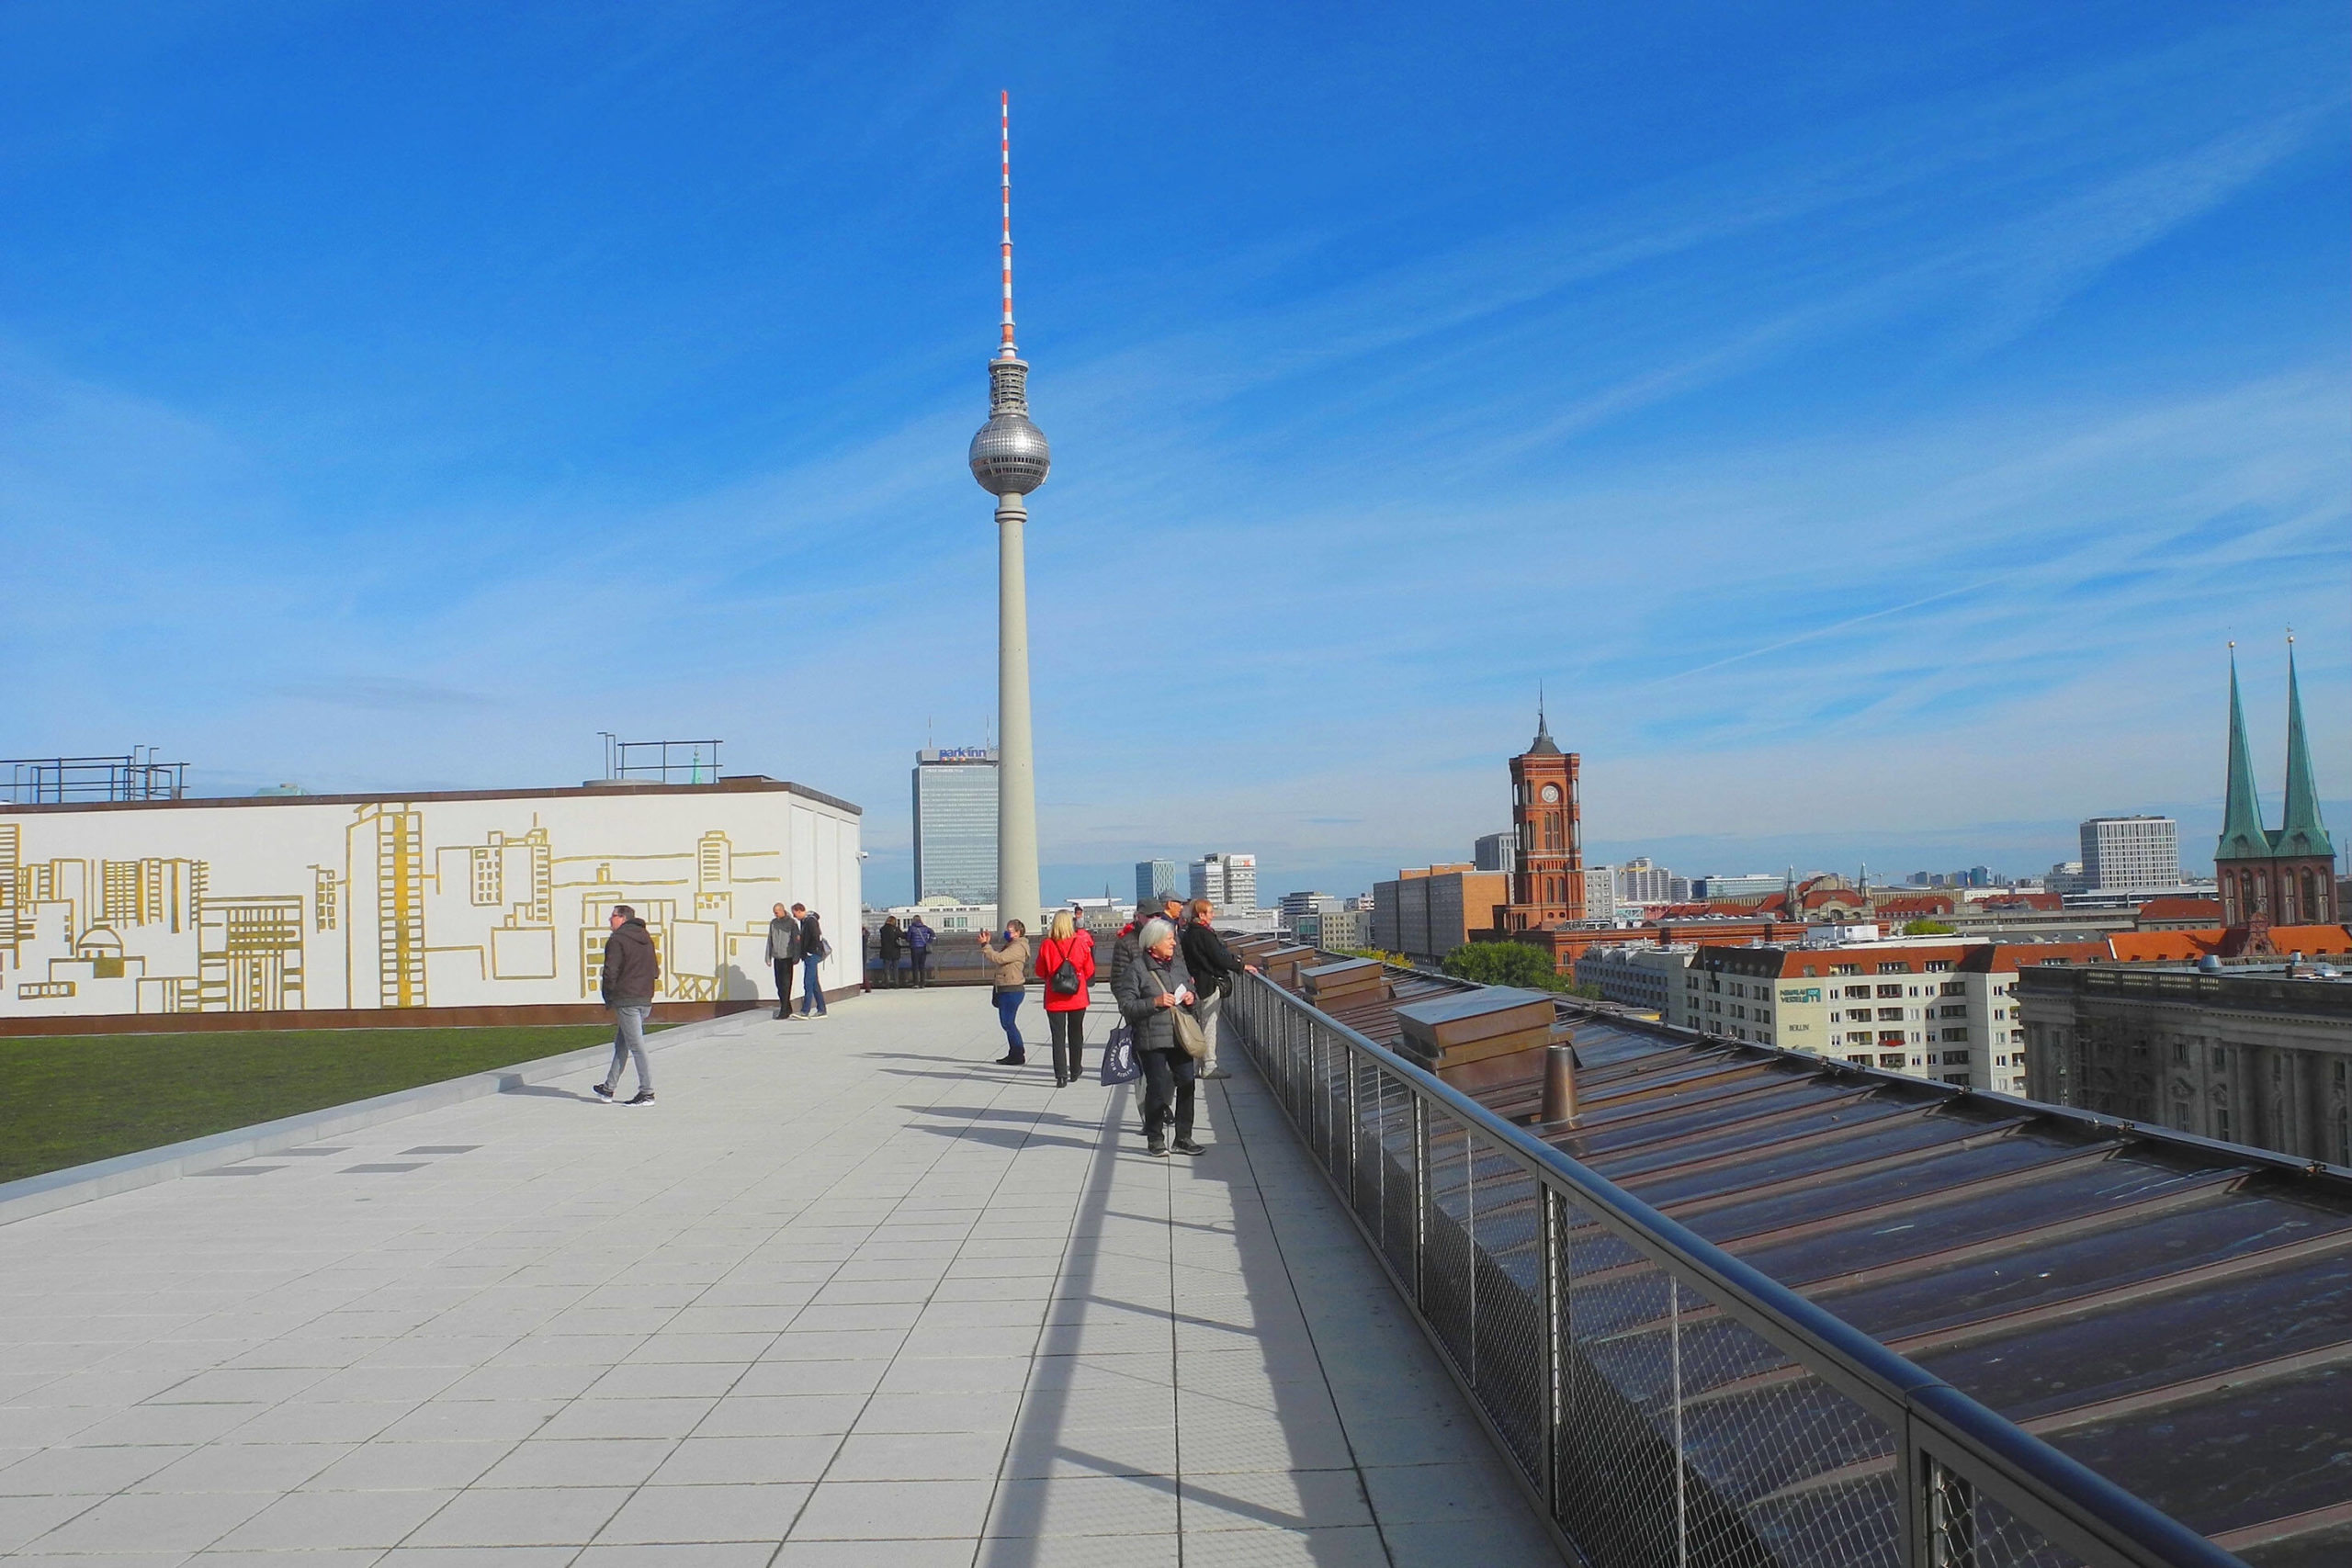 begehbare Dächer in Berlin Das Humboldt Forum gehört zu den spannendsten und vielseitigsten Orten in Berlin. Und die Dachterrasse bietet einen der schönsten Ausblicke.